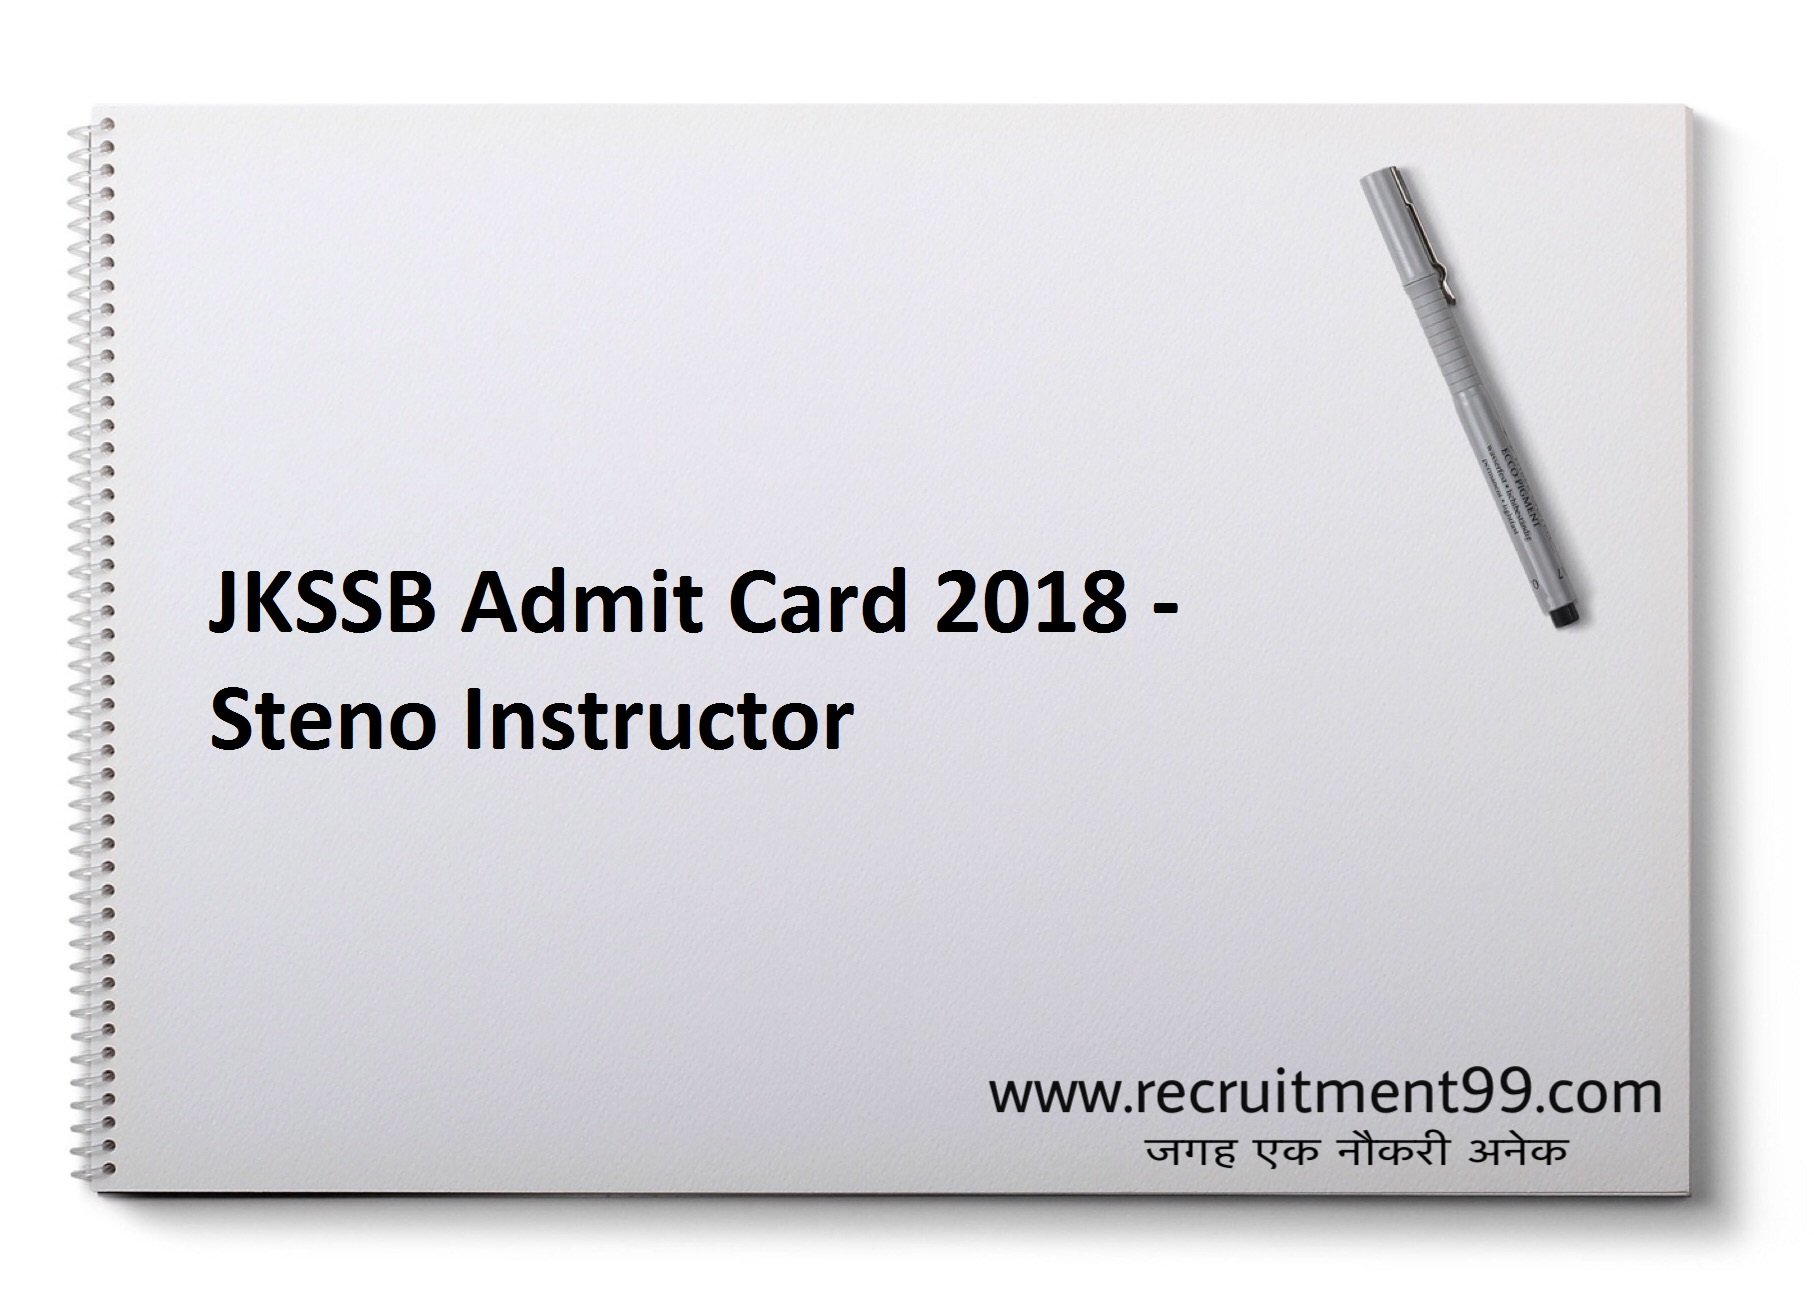 JKSSB Steno Instructor Recruitment Admit Card & Result 2018